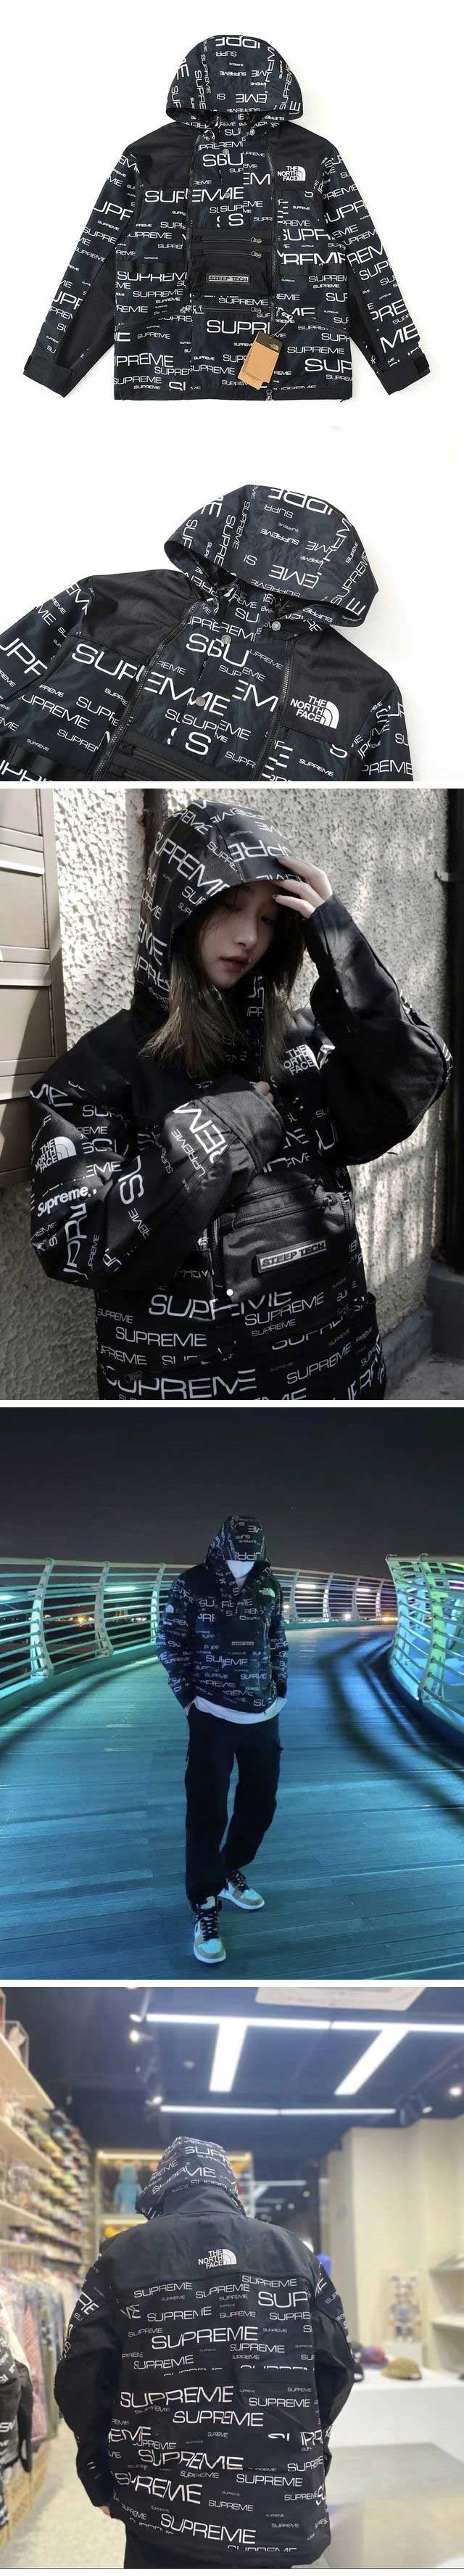 Supreme x The North Face Steep Tech Apogee Jacket Black シュプリーム ザ ノース フェイス スティープ テック アポジー ジャケット ブラック